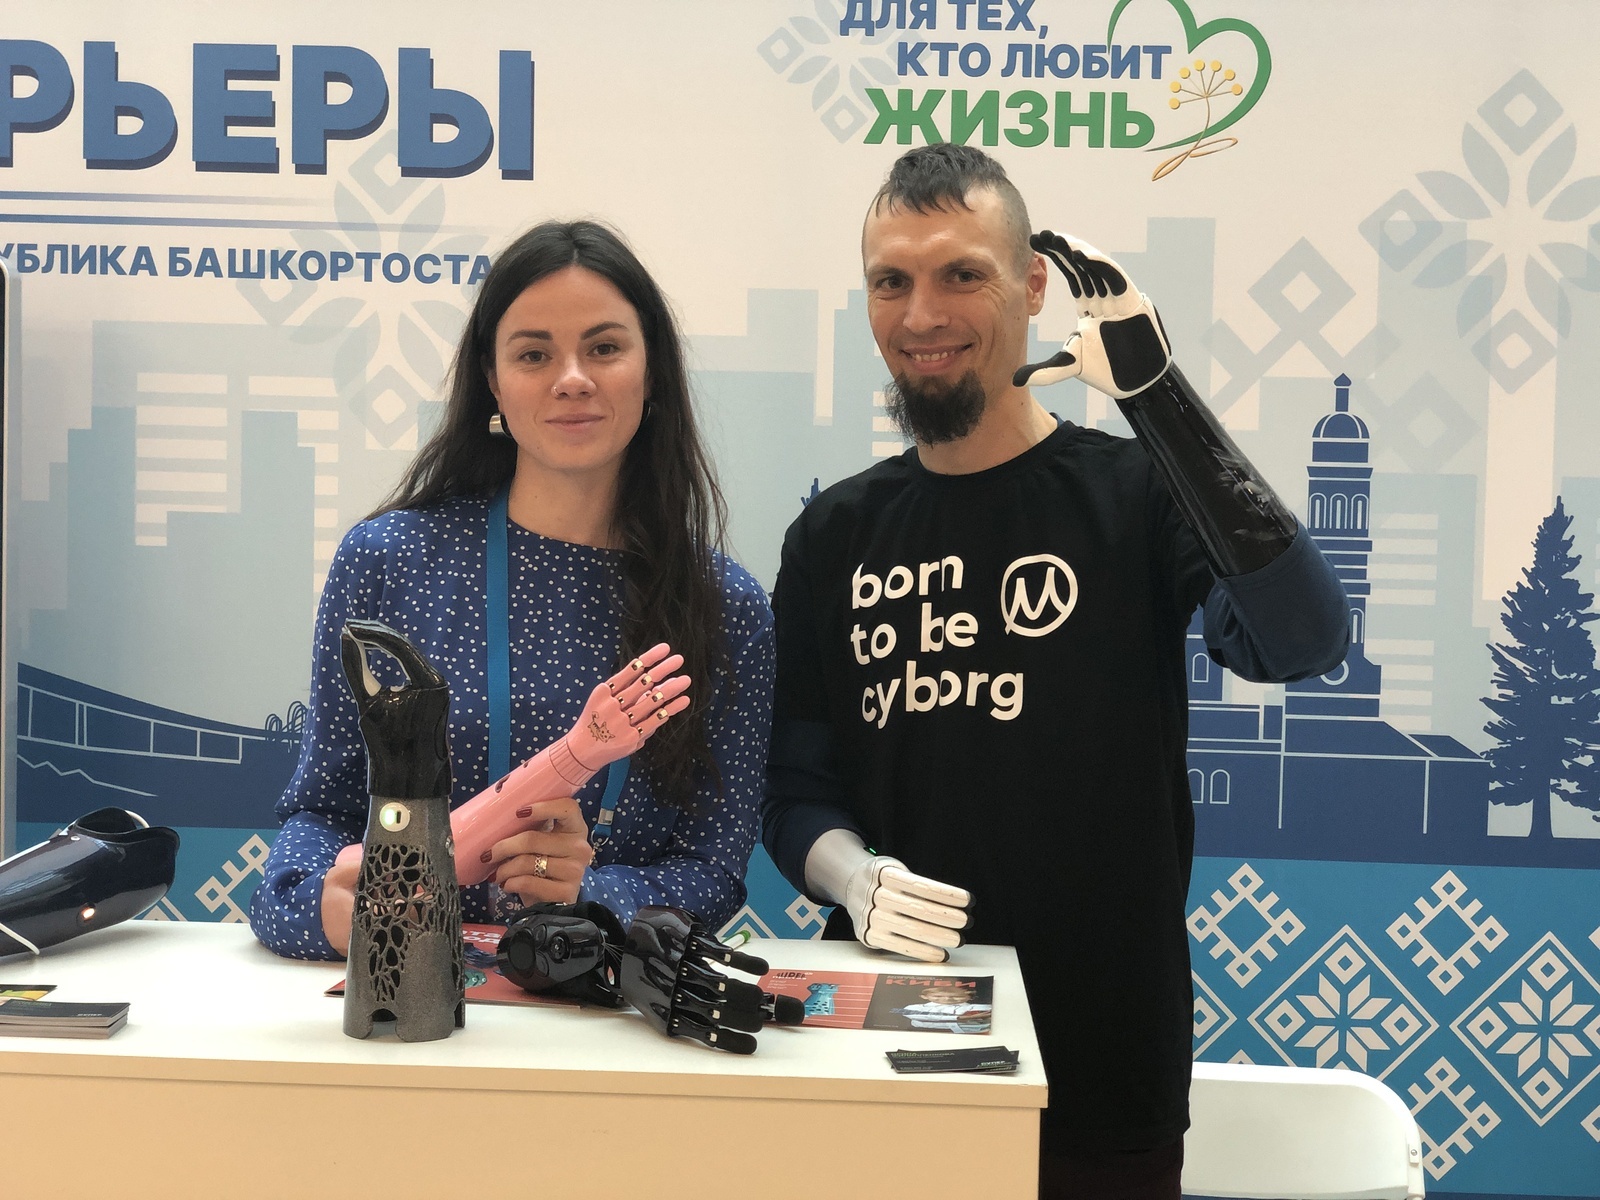 Испытатель бионических протезов из Москвы рассказал о своей работе